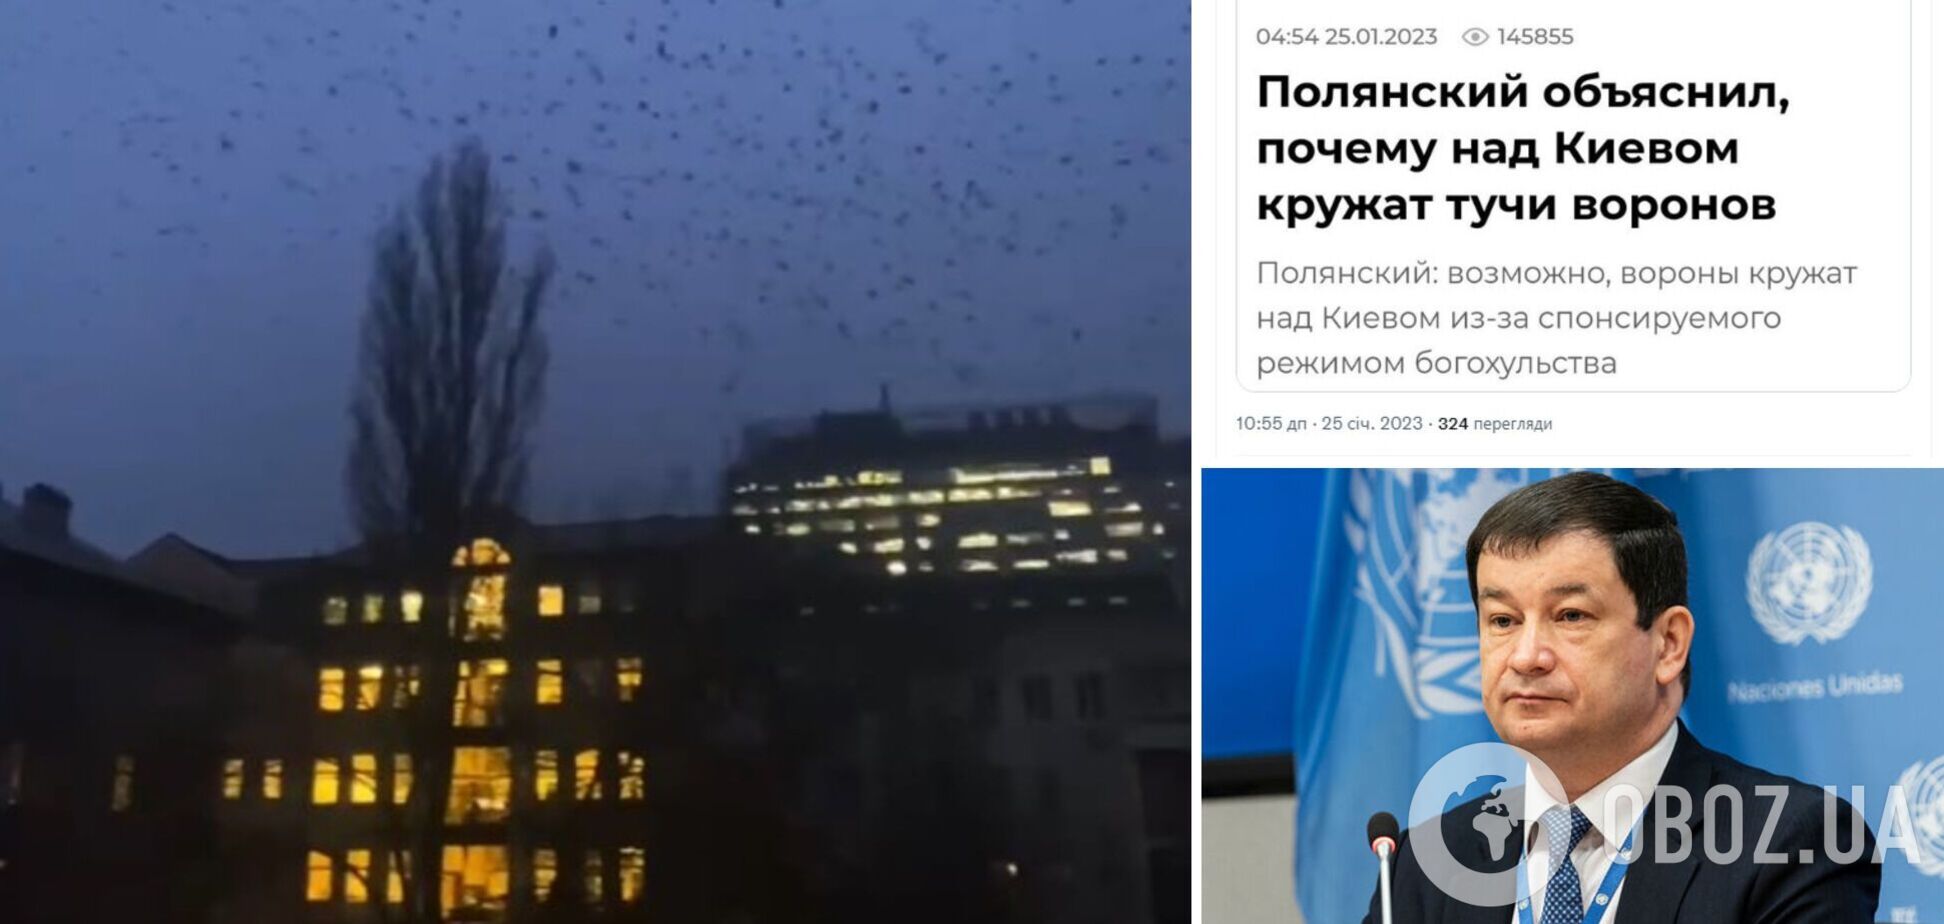 'Бойові комарі відпочивають': у Росії видали заяву про 'особливих' ворон у небі над Києвом, у мережі відреагували